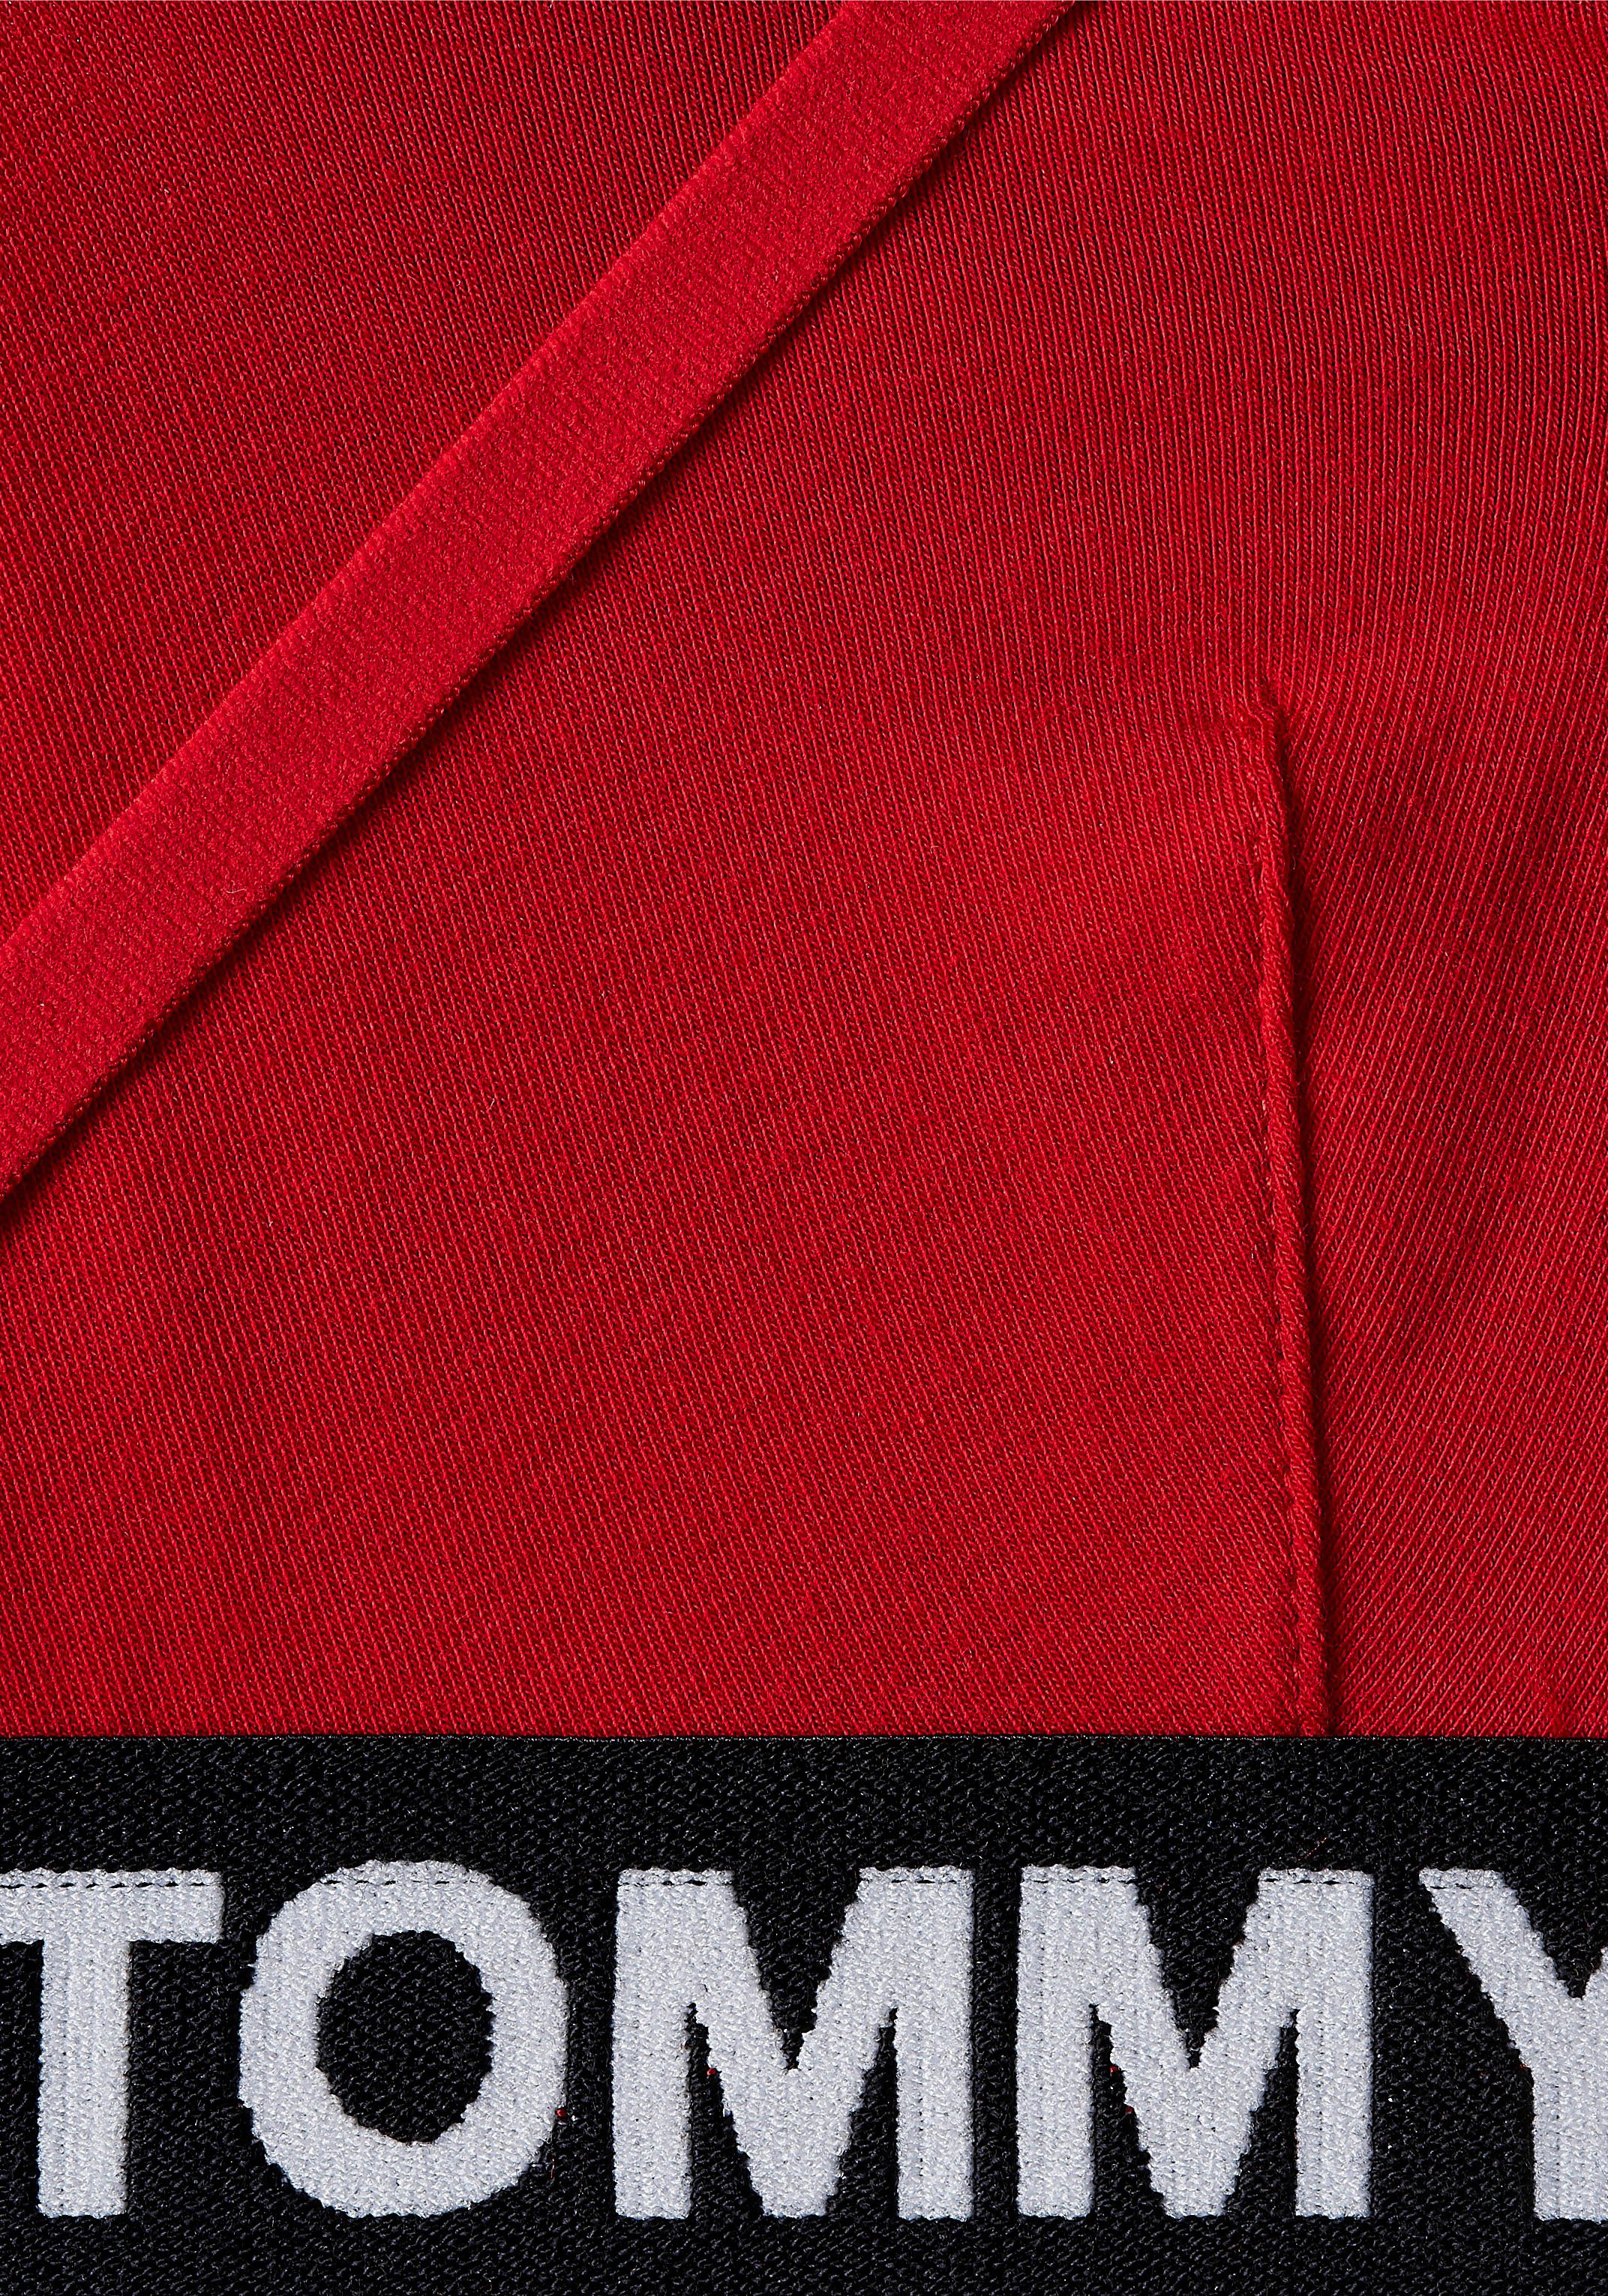 Tommy Hilfiger Hilfiger Elastiktape auf Underwear TRIANGLE dem Red Primary UNLINED Triangel-BH Logo-Schriftzug Tommy BRALETTE mit